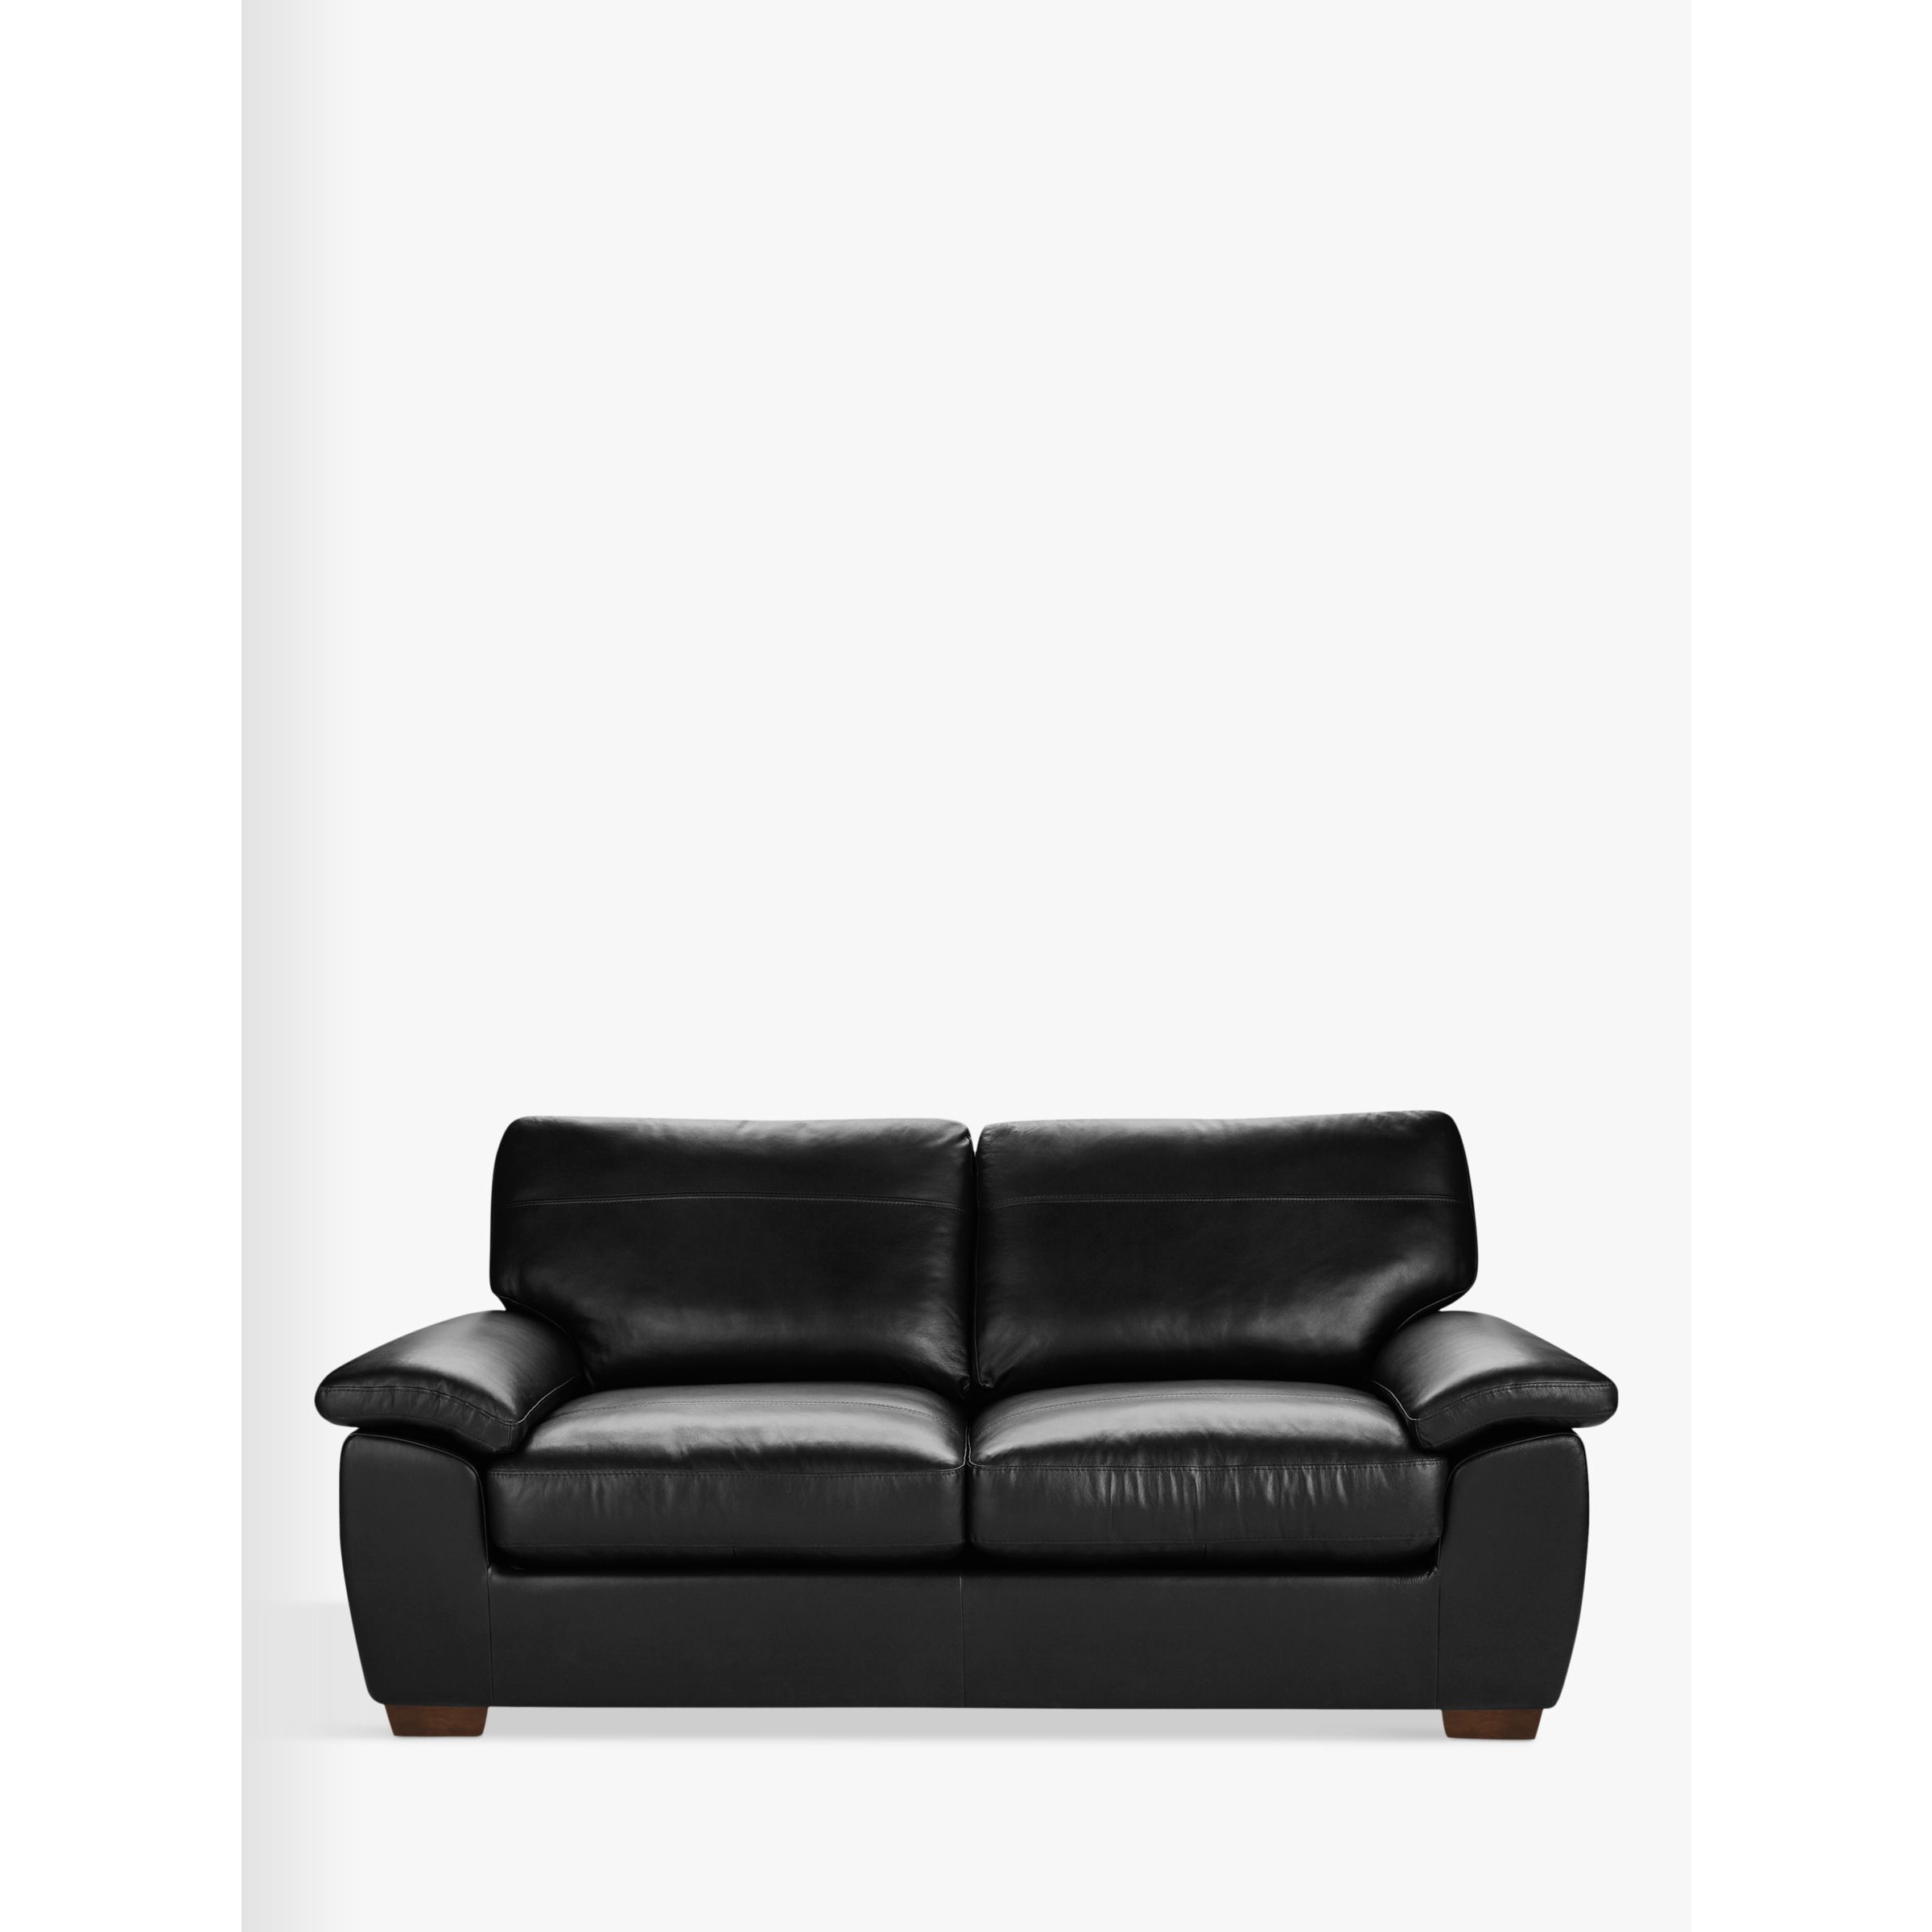 John Lewis Camden Large 3 Seater Leather Sofa, Dark Leg - image 1